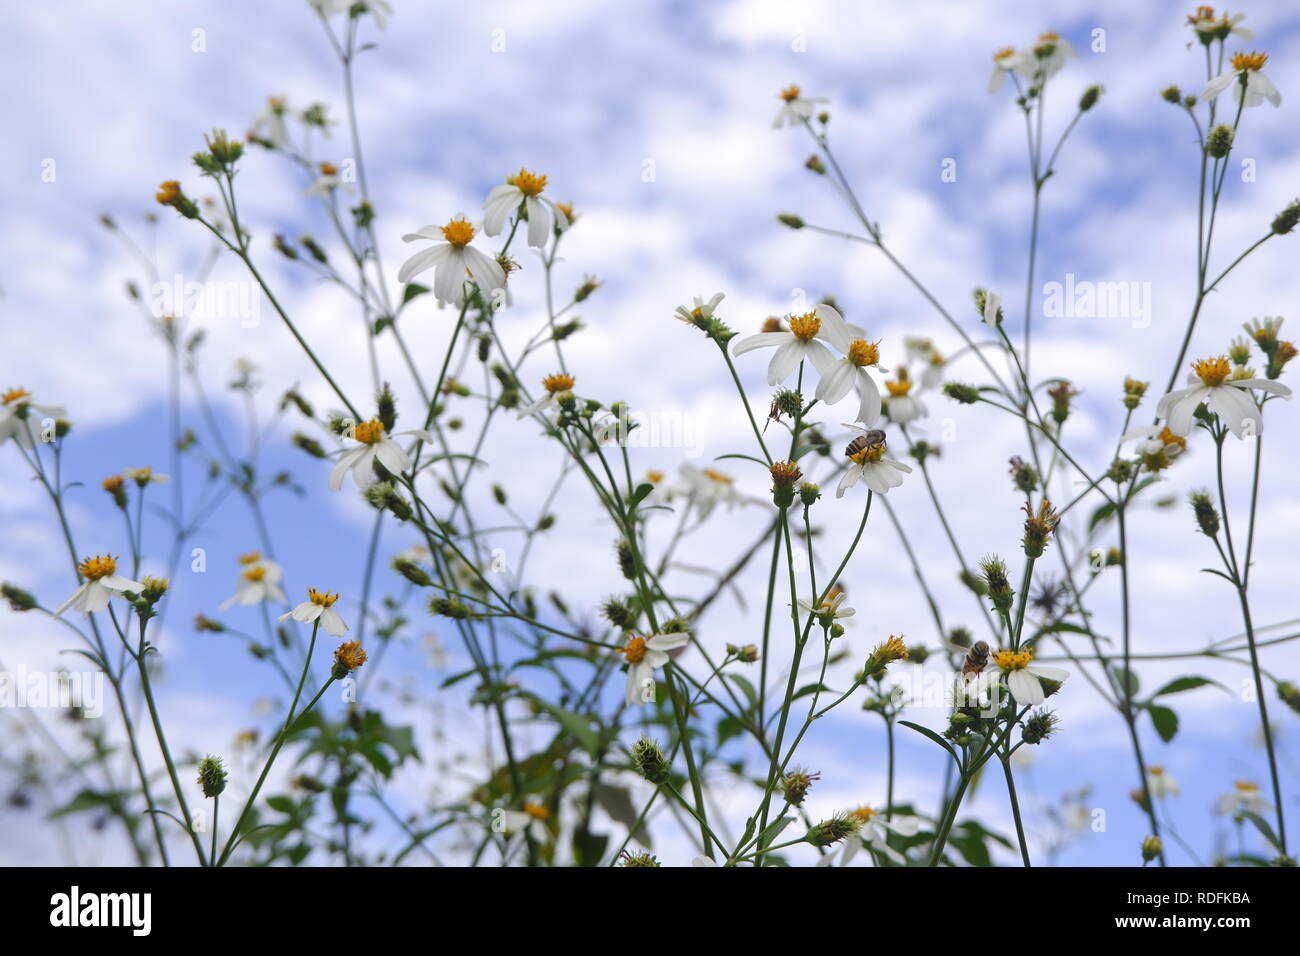 Gänseblümchen weiß Blume Blüte in der Natur gegen den blauen Himmel Hintergrund Stockfoto